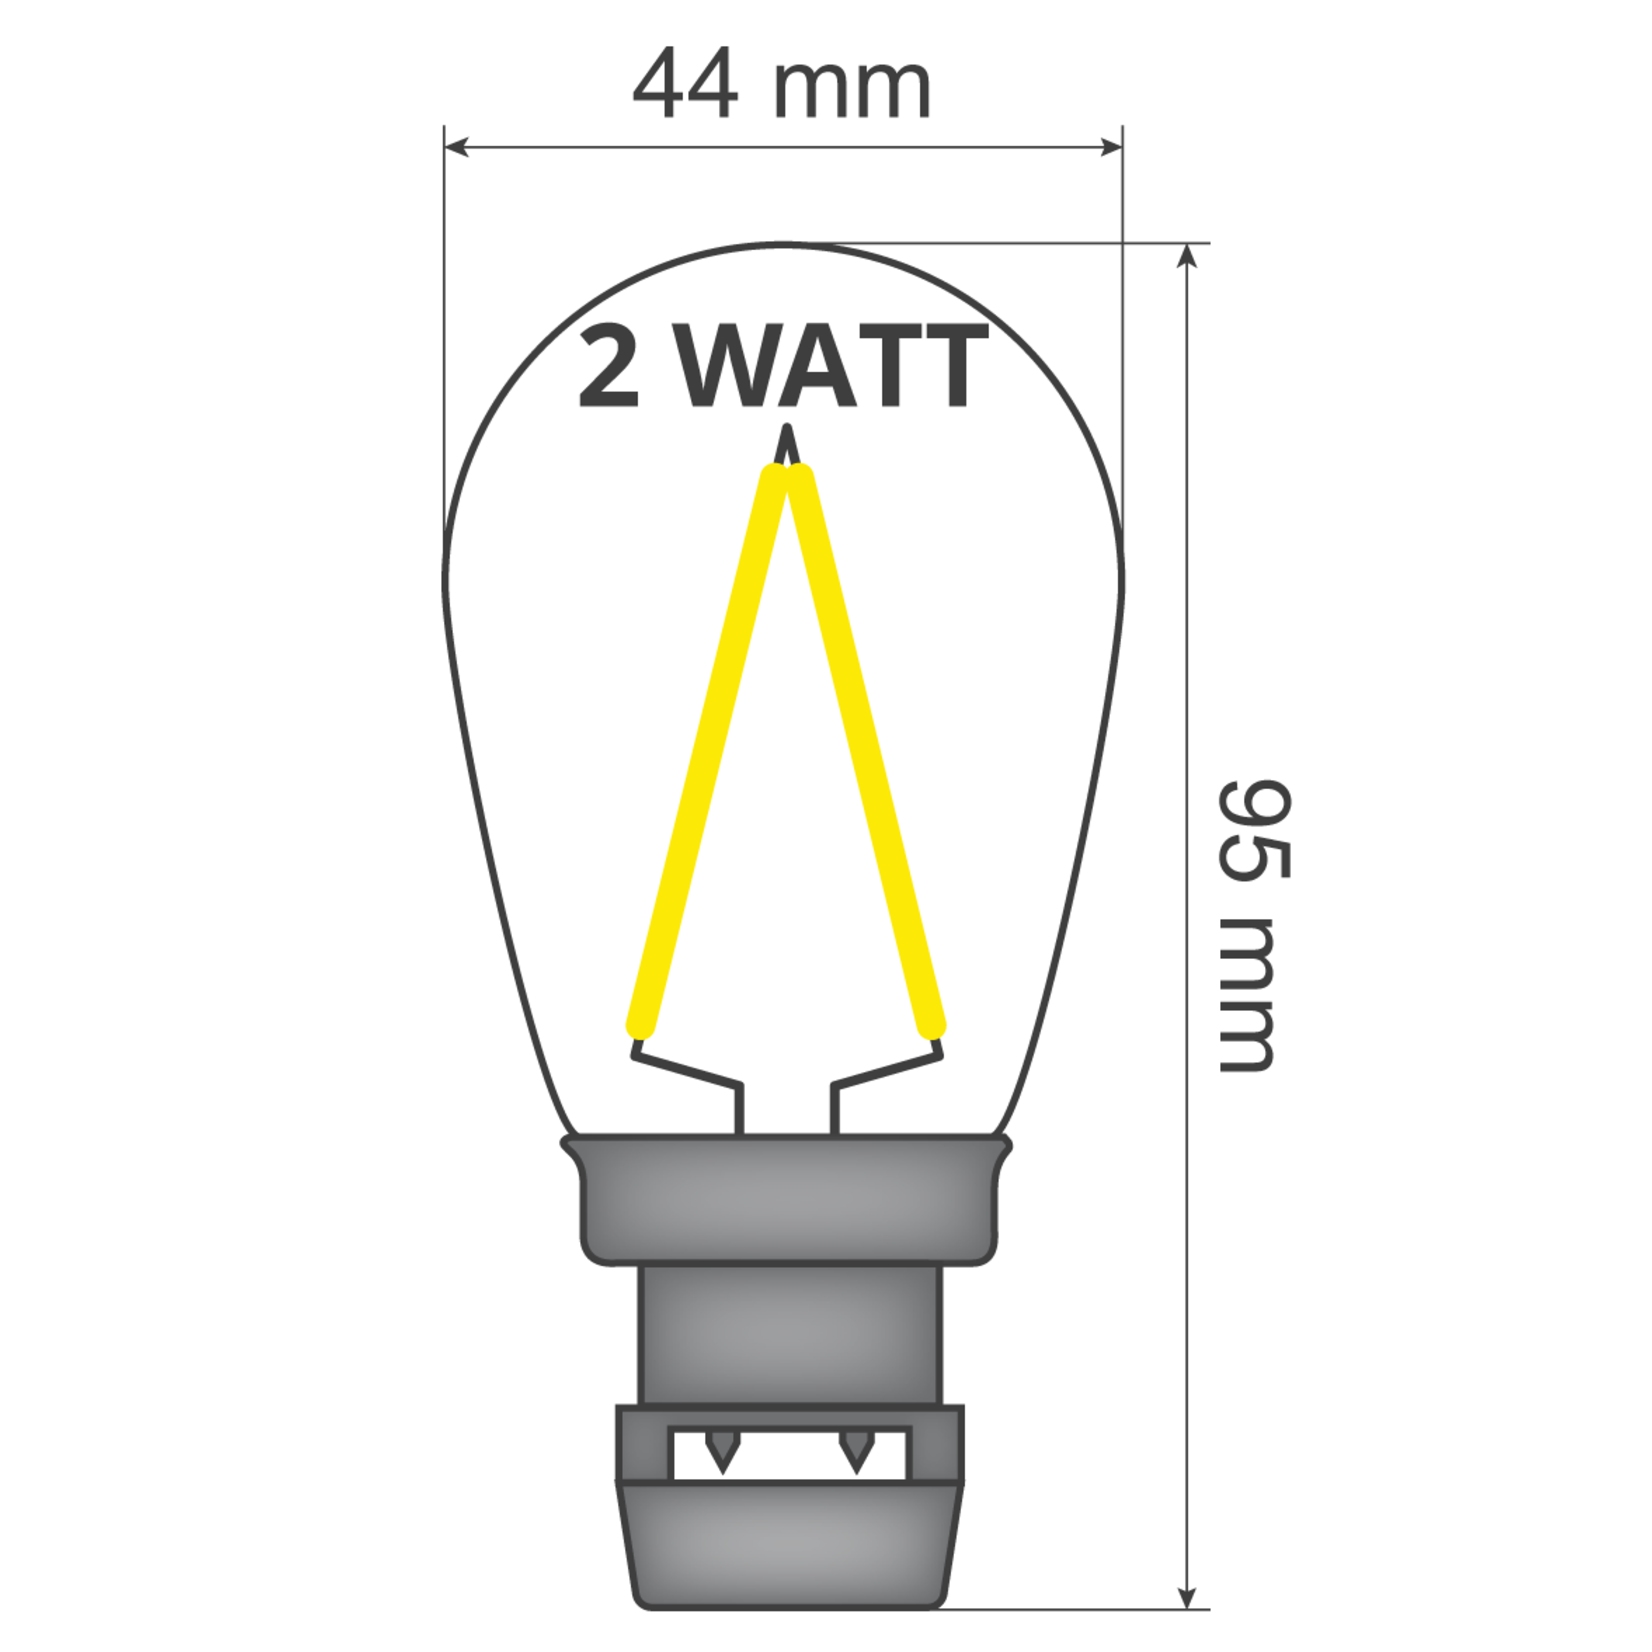 prik-ledlamp-filament-dimbaar IP65 2650K